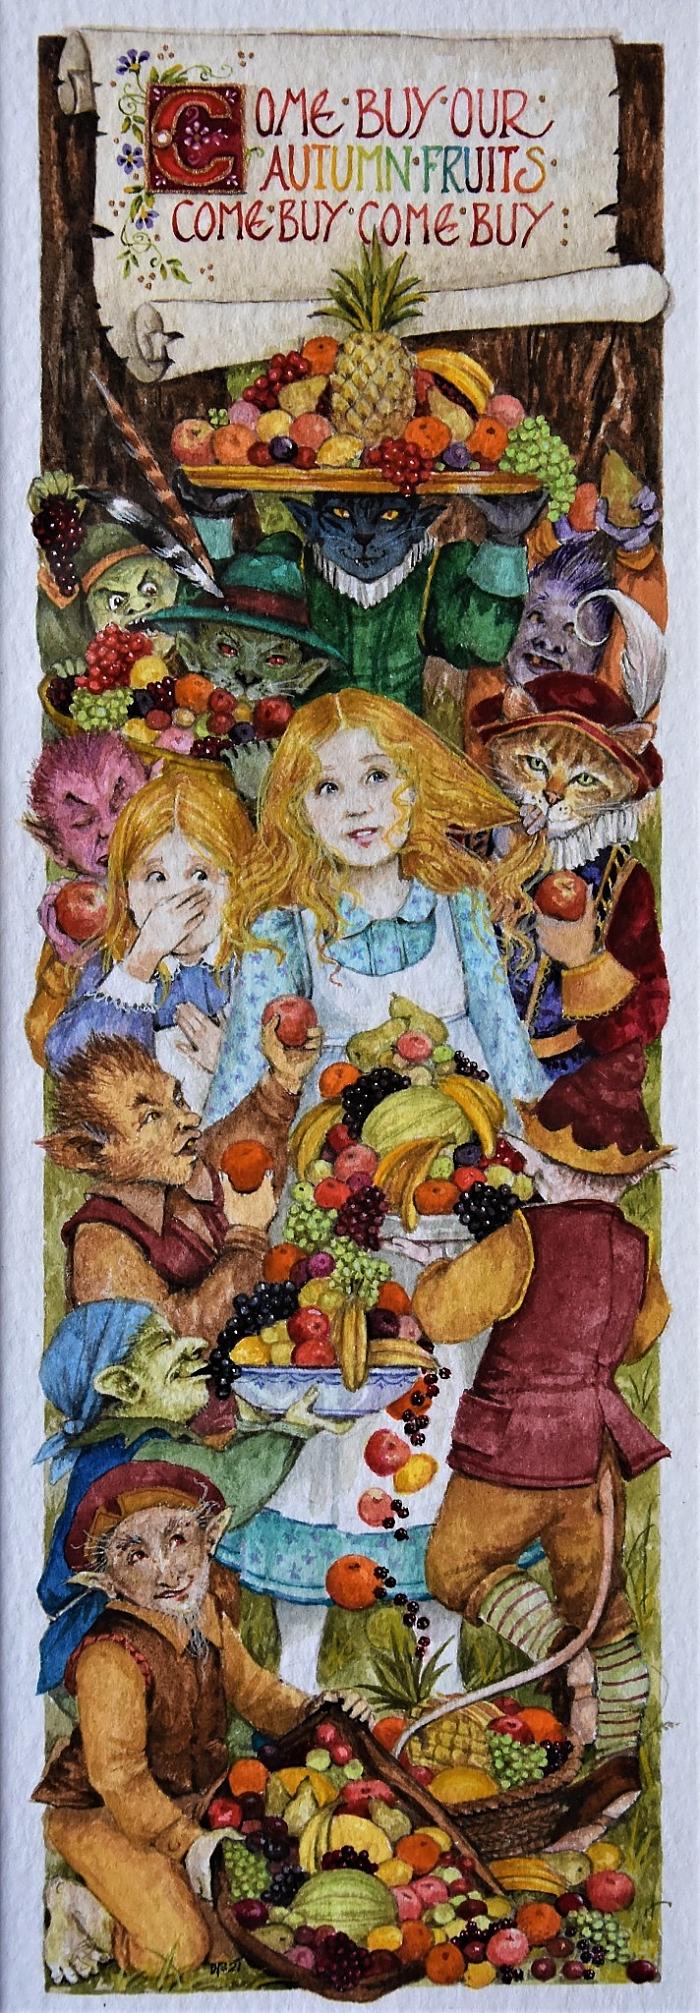 Goblin Market by Christina Rossetti by Debby Faulkner-Stevens